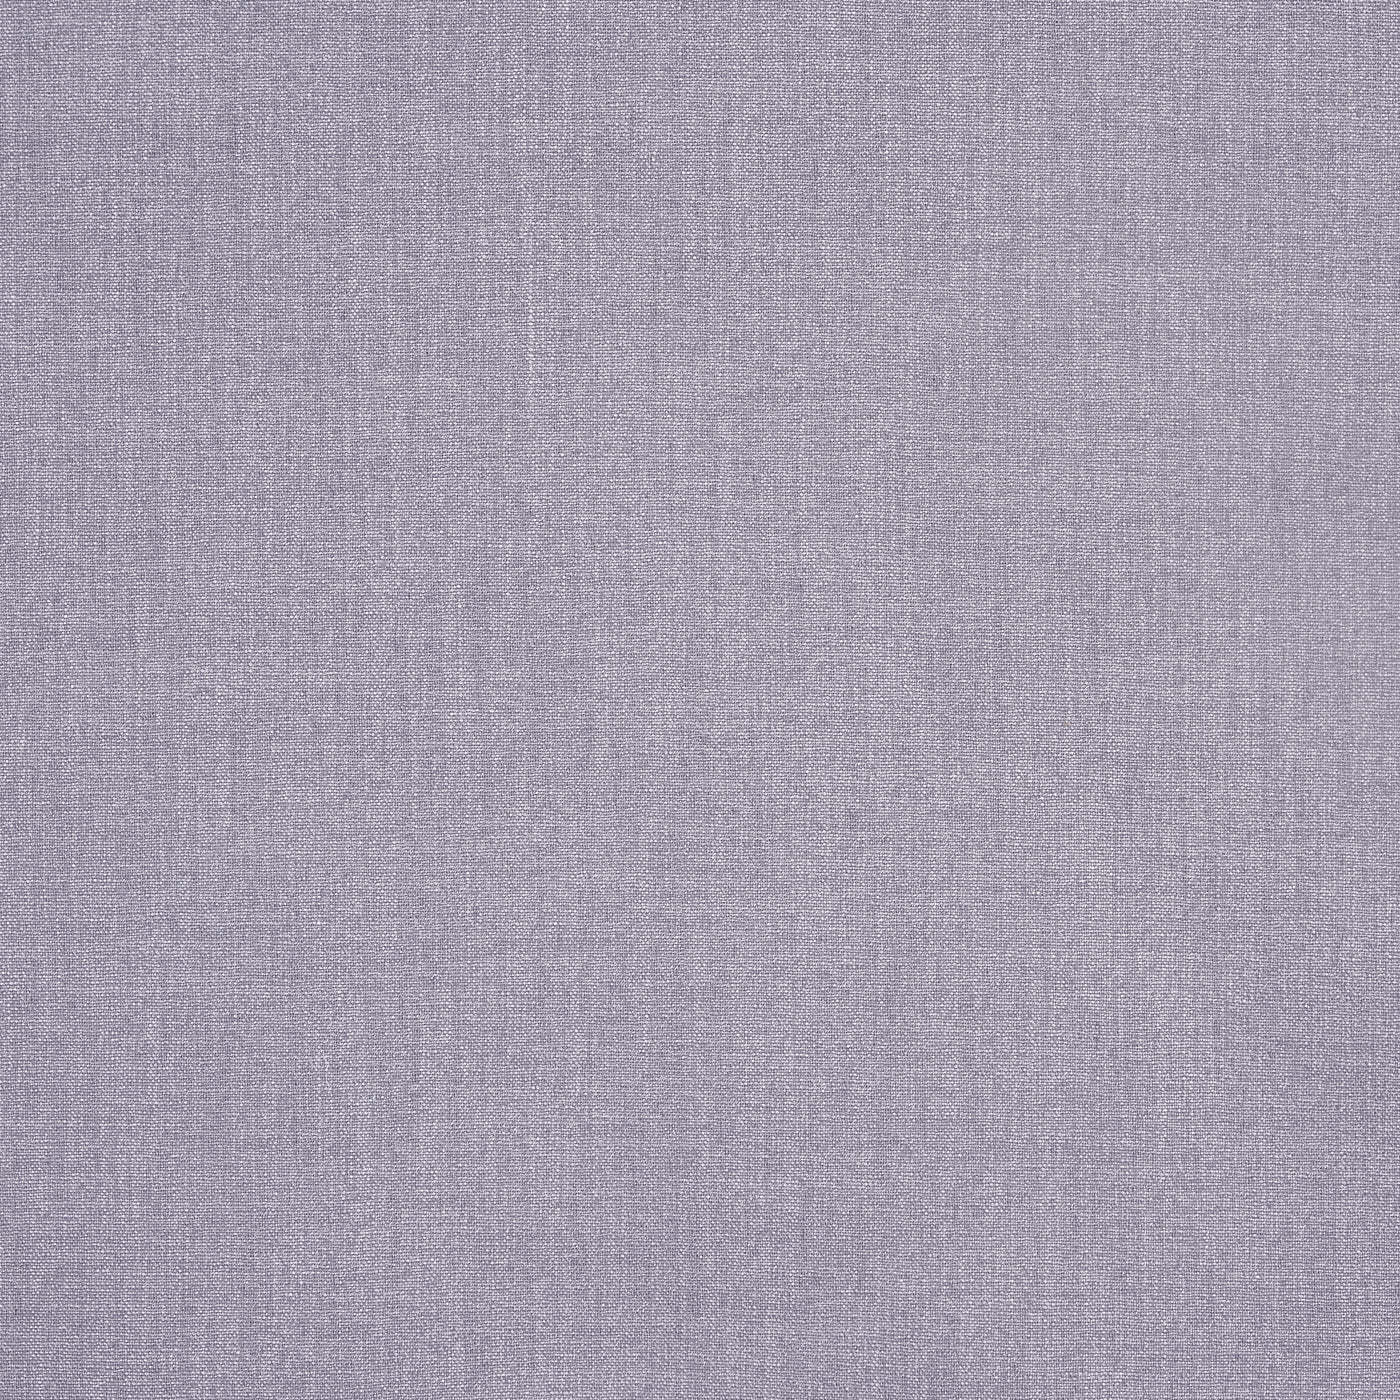 Prestigious Textiles Saxon Fabric Violet